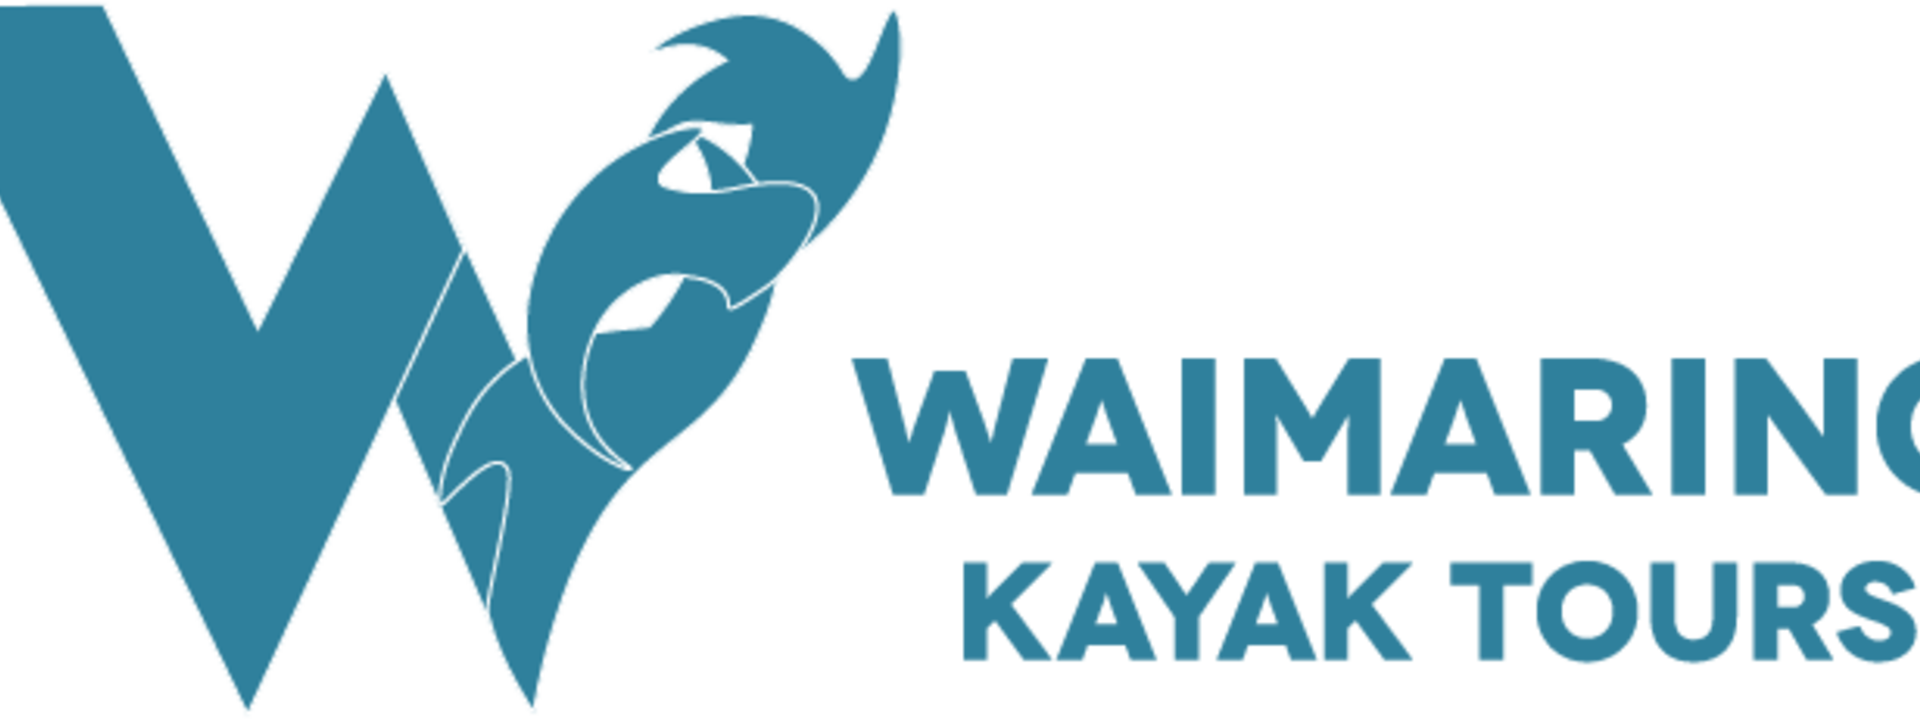 Blue Kayak Tours Horizontal Logo_0.png